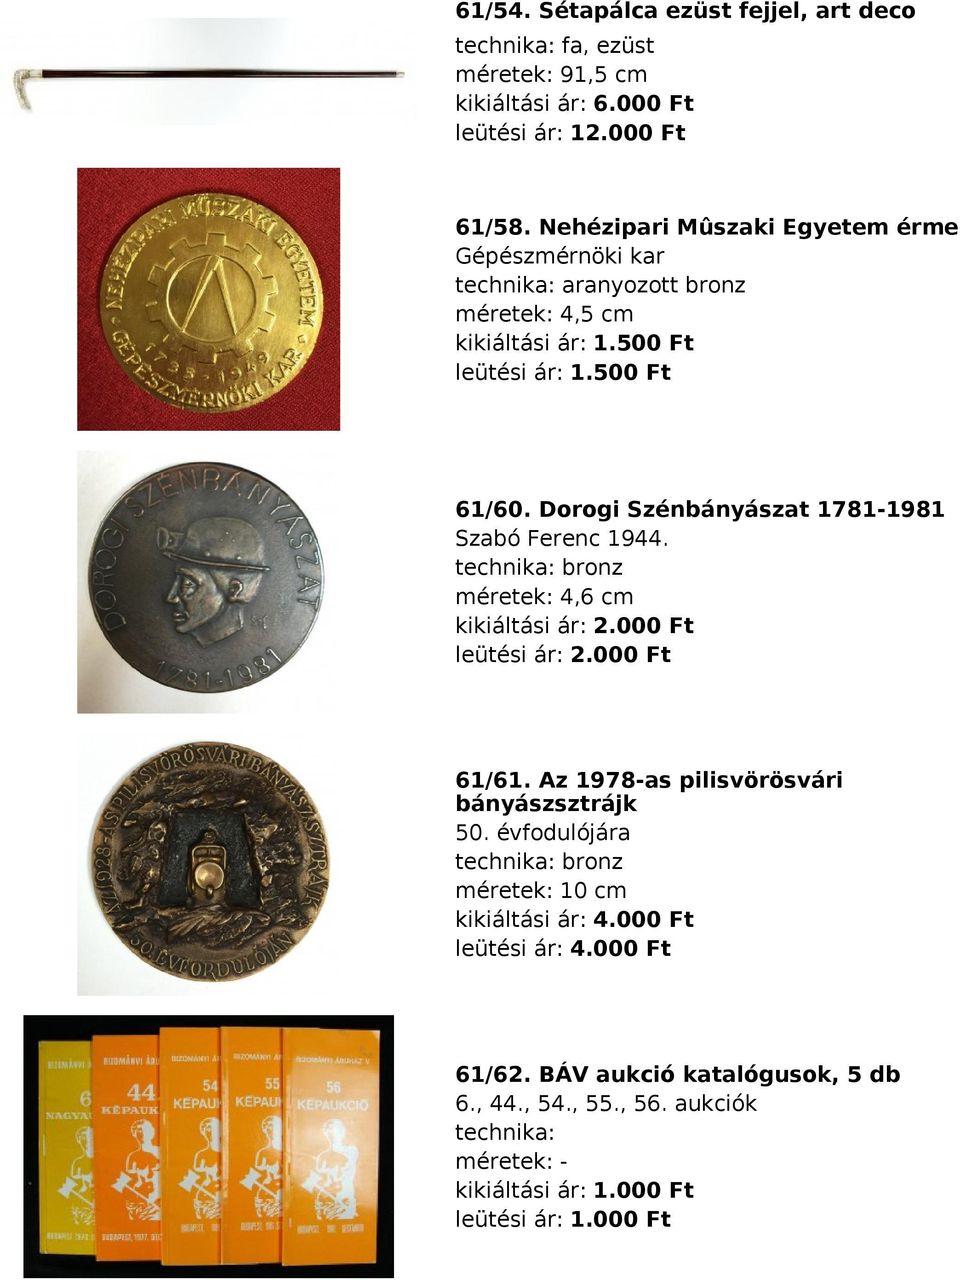 Dorogi Szénbányászat 1781-1981 Szabó Ferenc 1944. bronz méretek: 4,6 cm kikiáltási ár: 2.000 Ft leütési ár: 2.000 Ft 61/61.